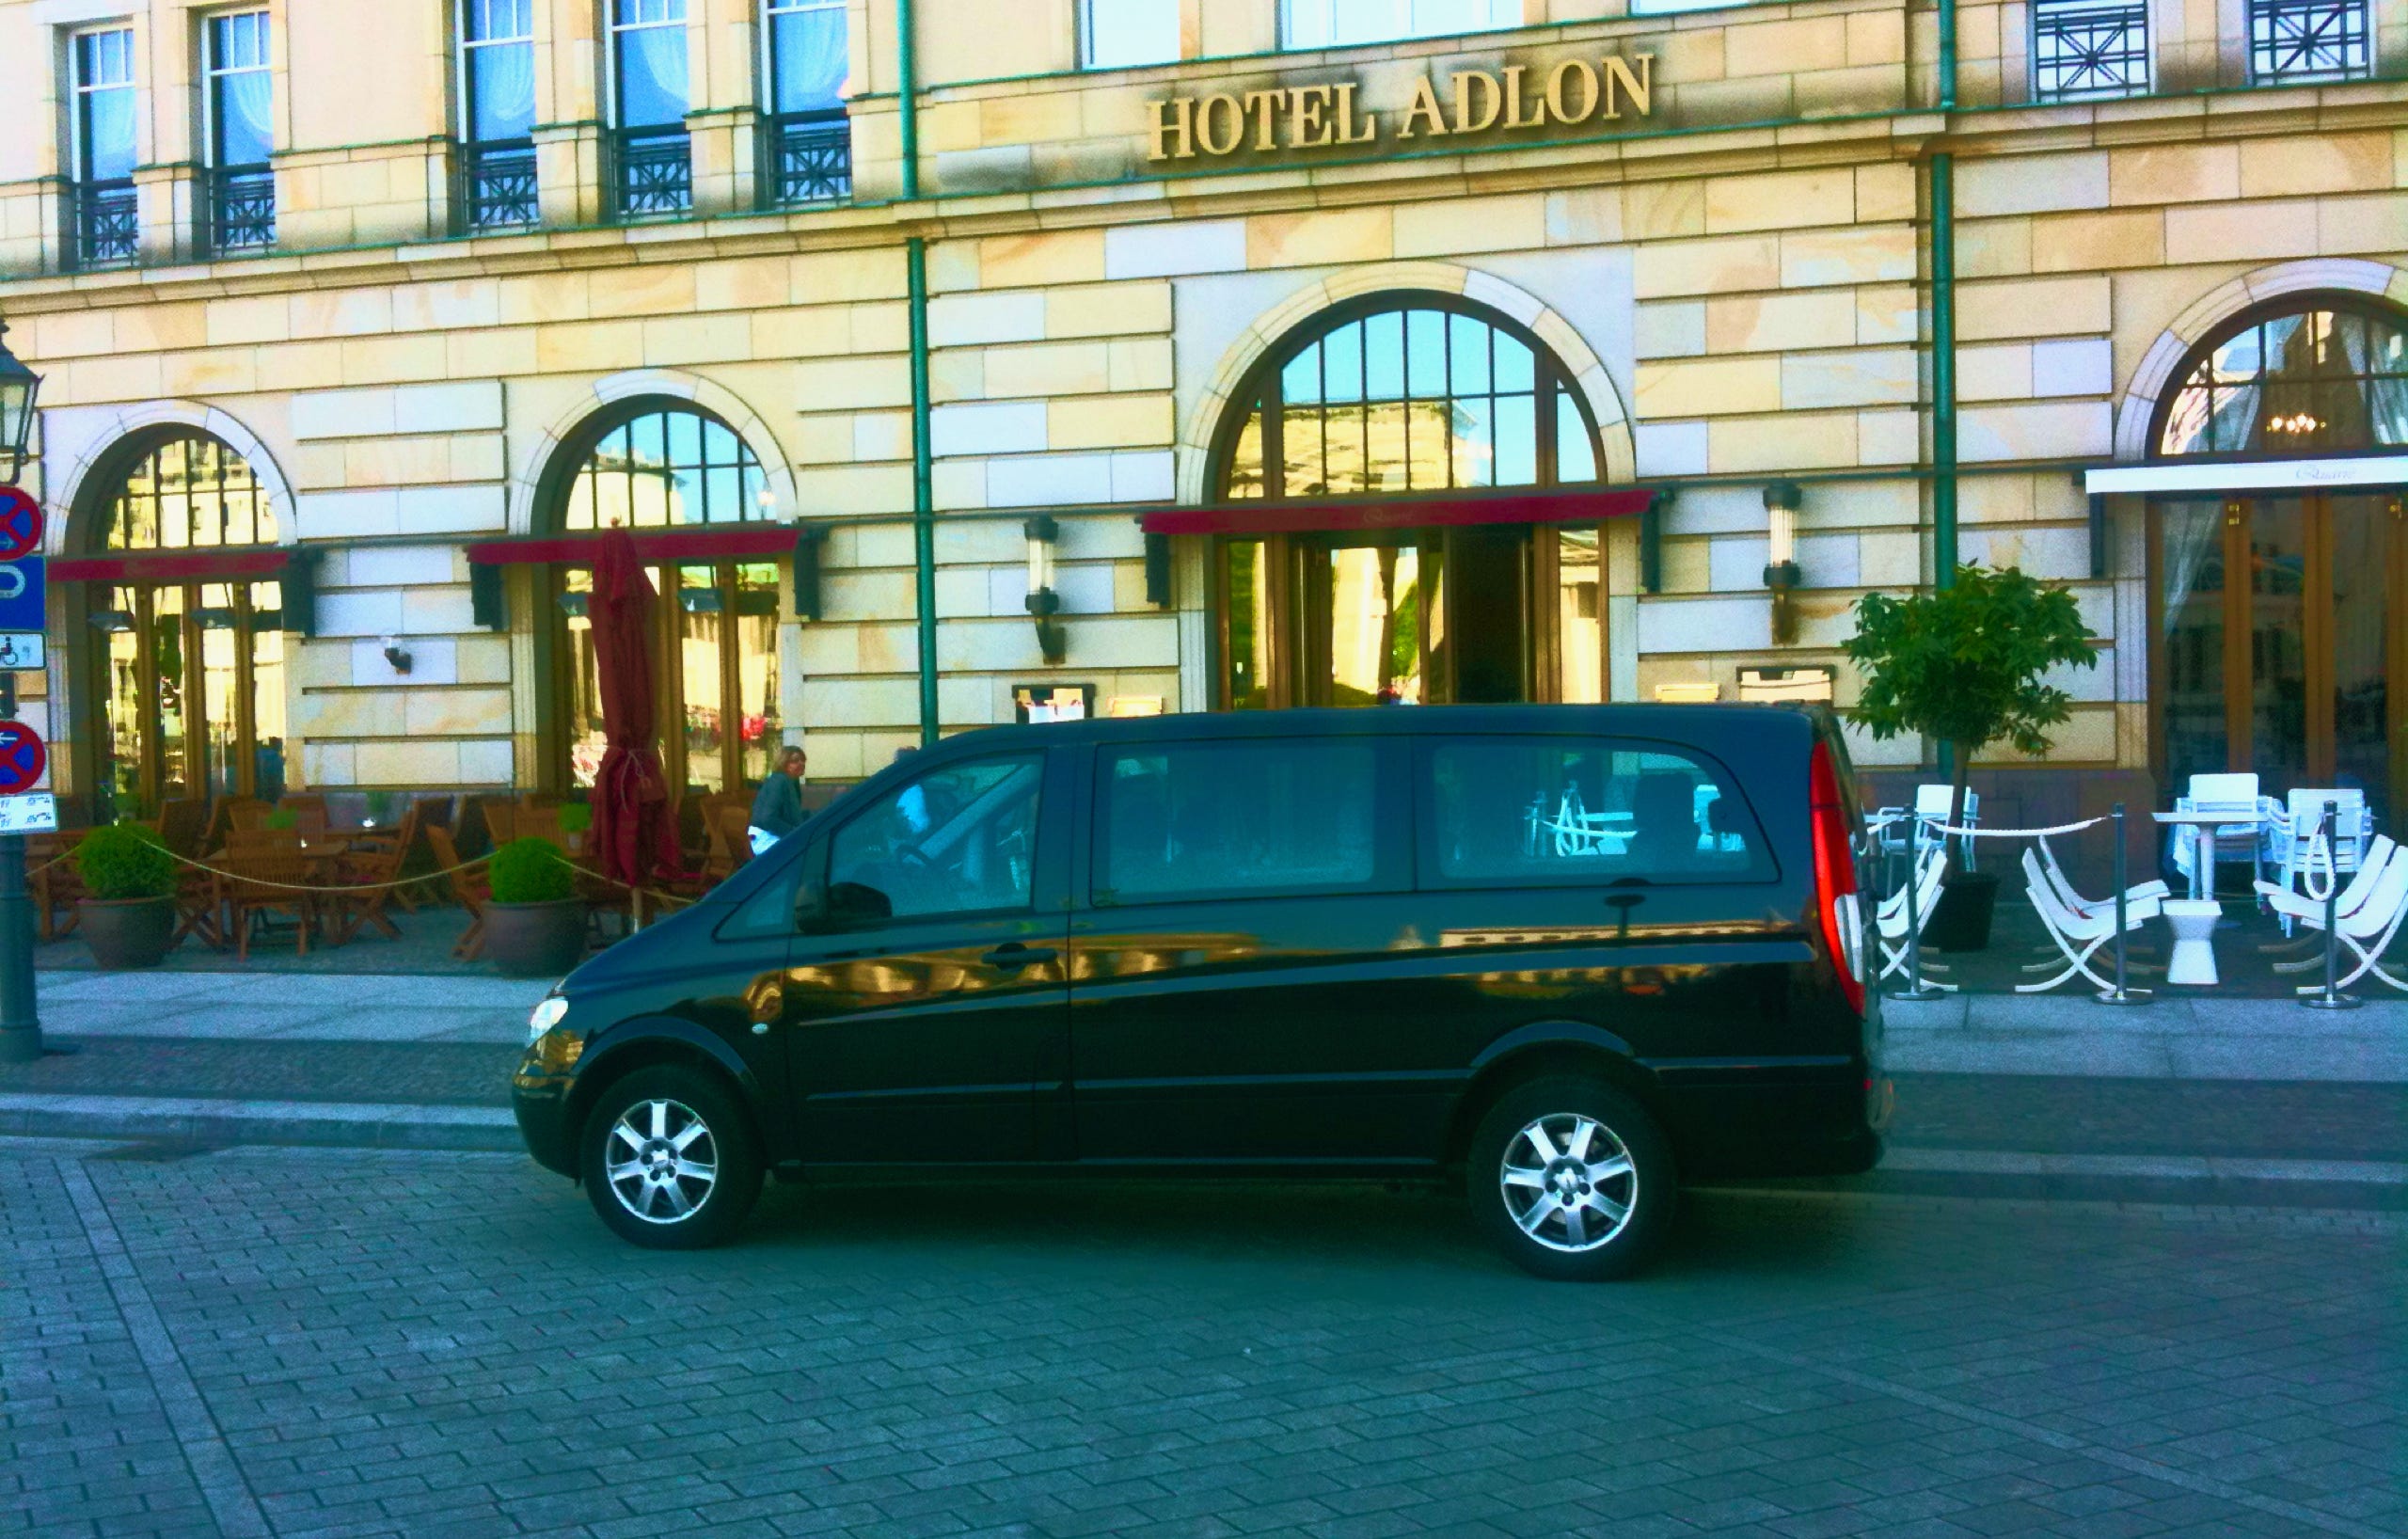 Van in front of Hotel Adlon